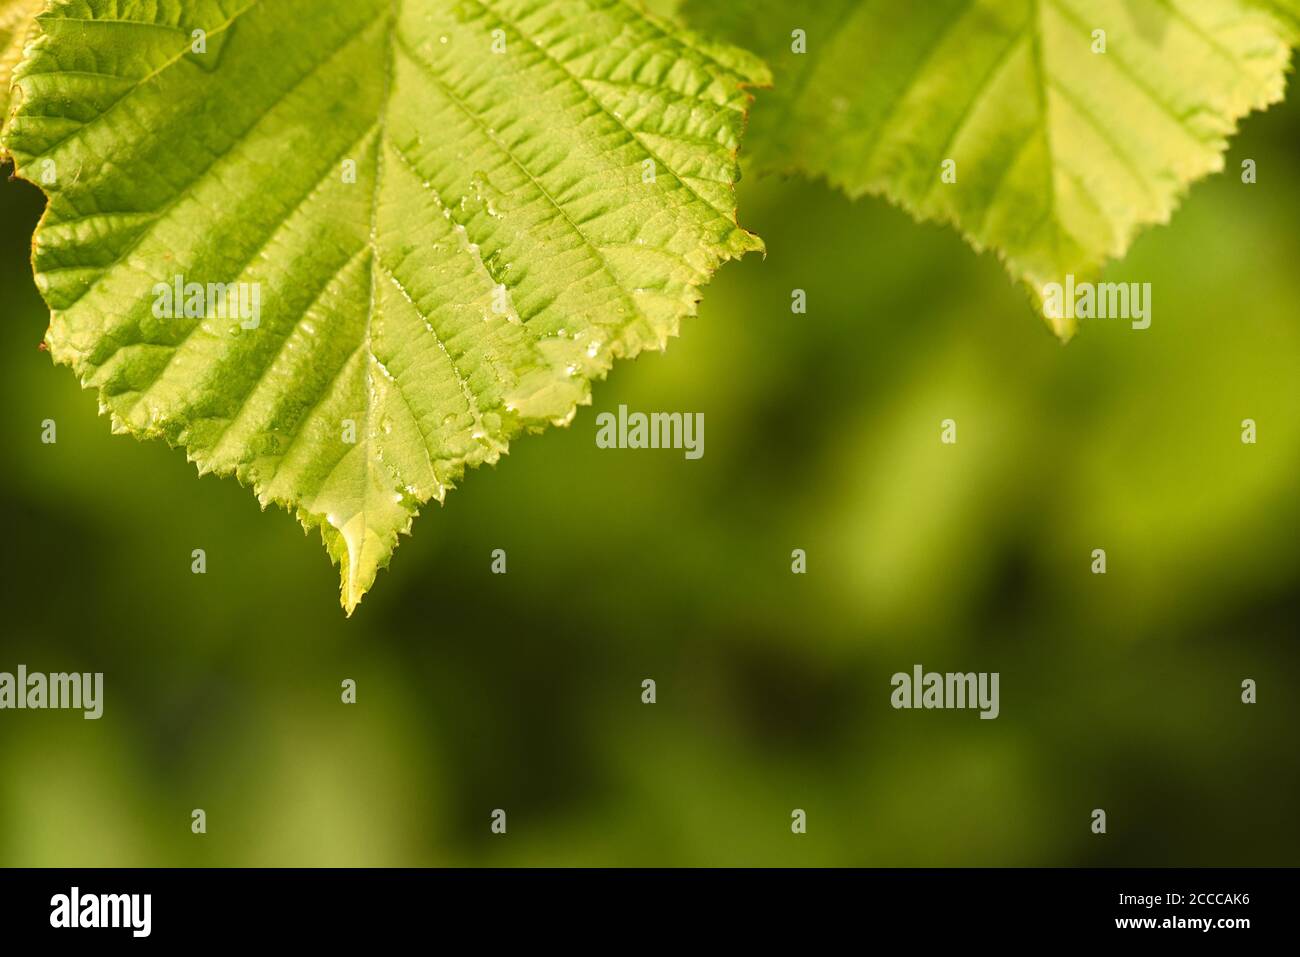 Verde Tilia linden hojas en la luz natural de fondo, la naturaleza en detalle otoño Foto de stock